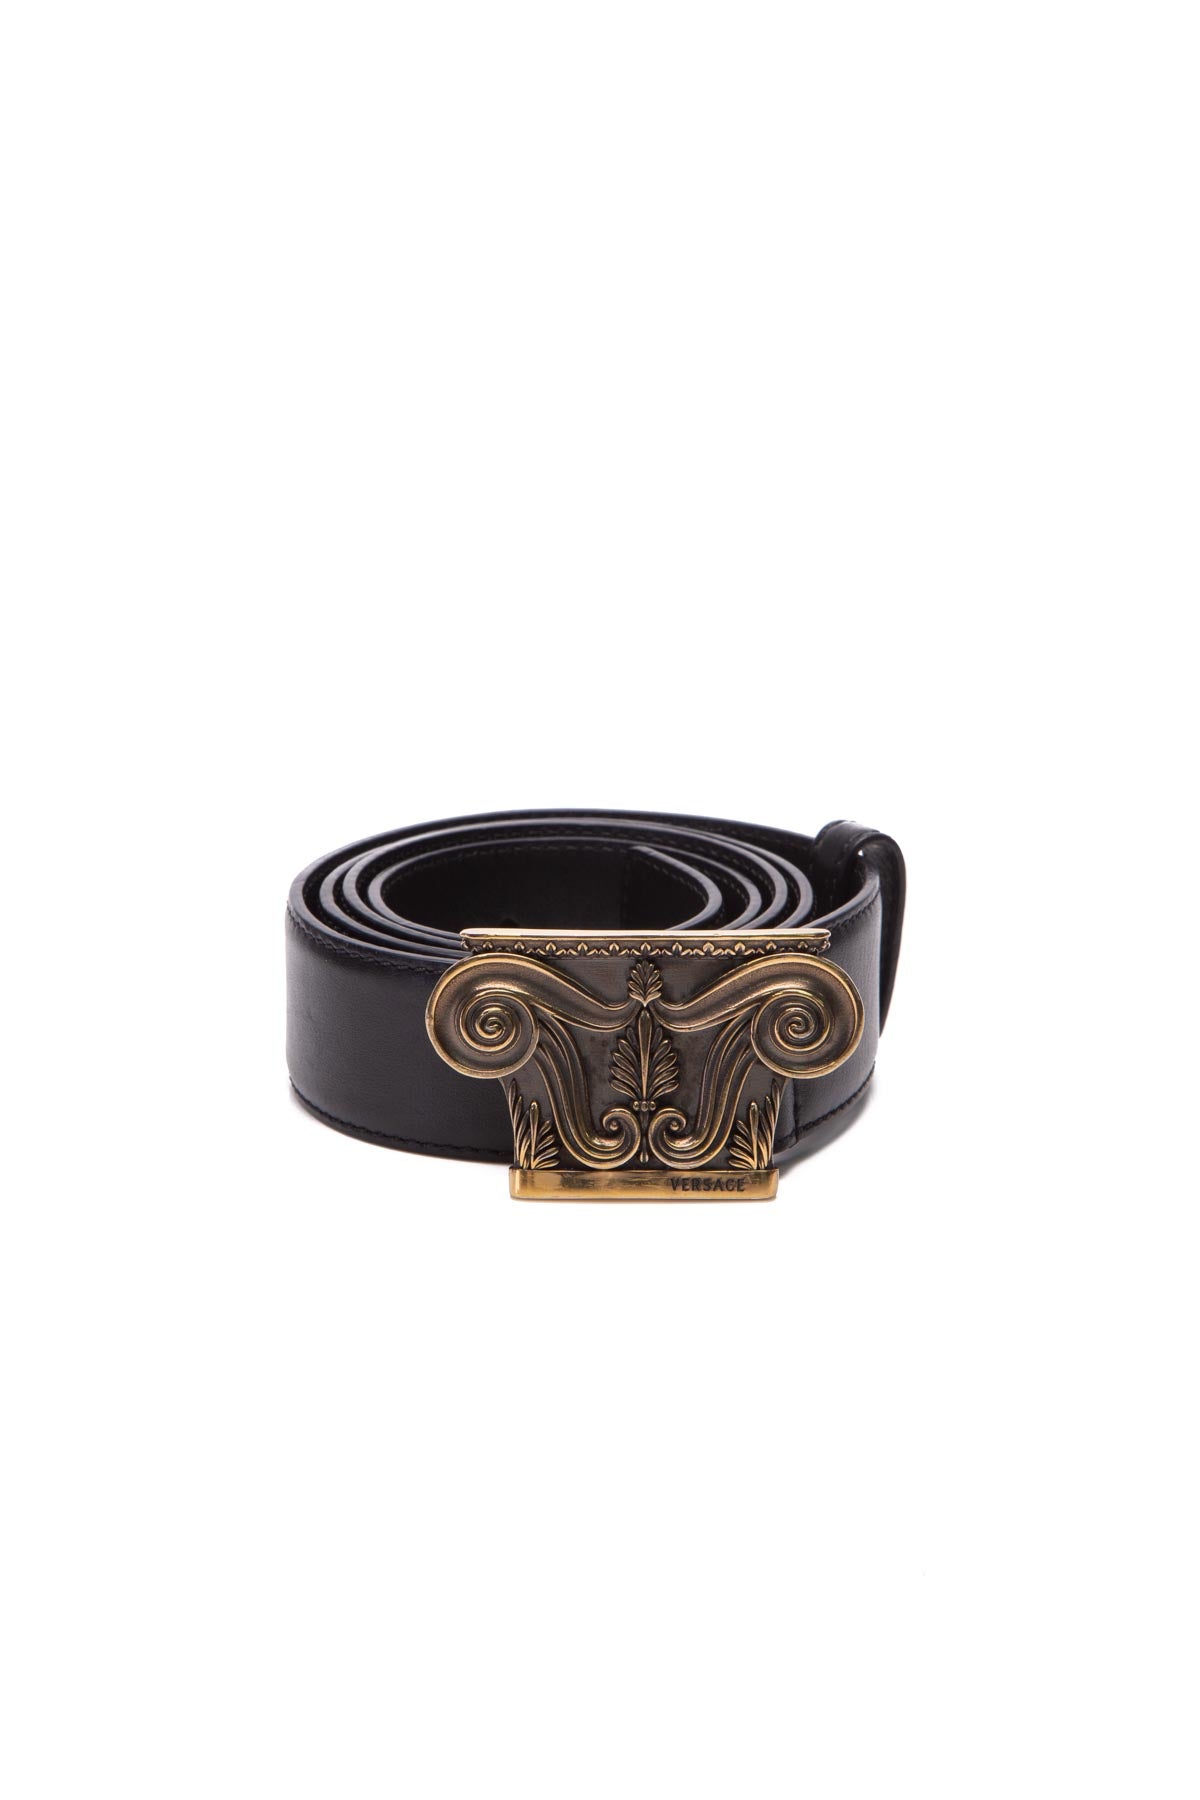 Versace Medusa Rectangular Buckle Belt in Black for Men